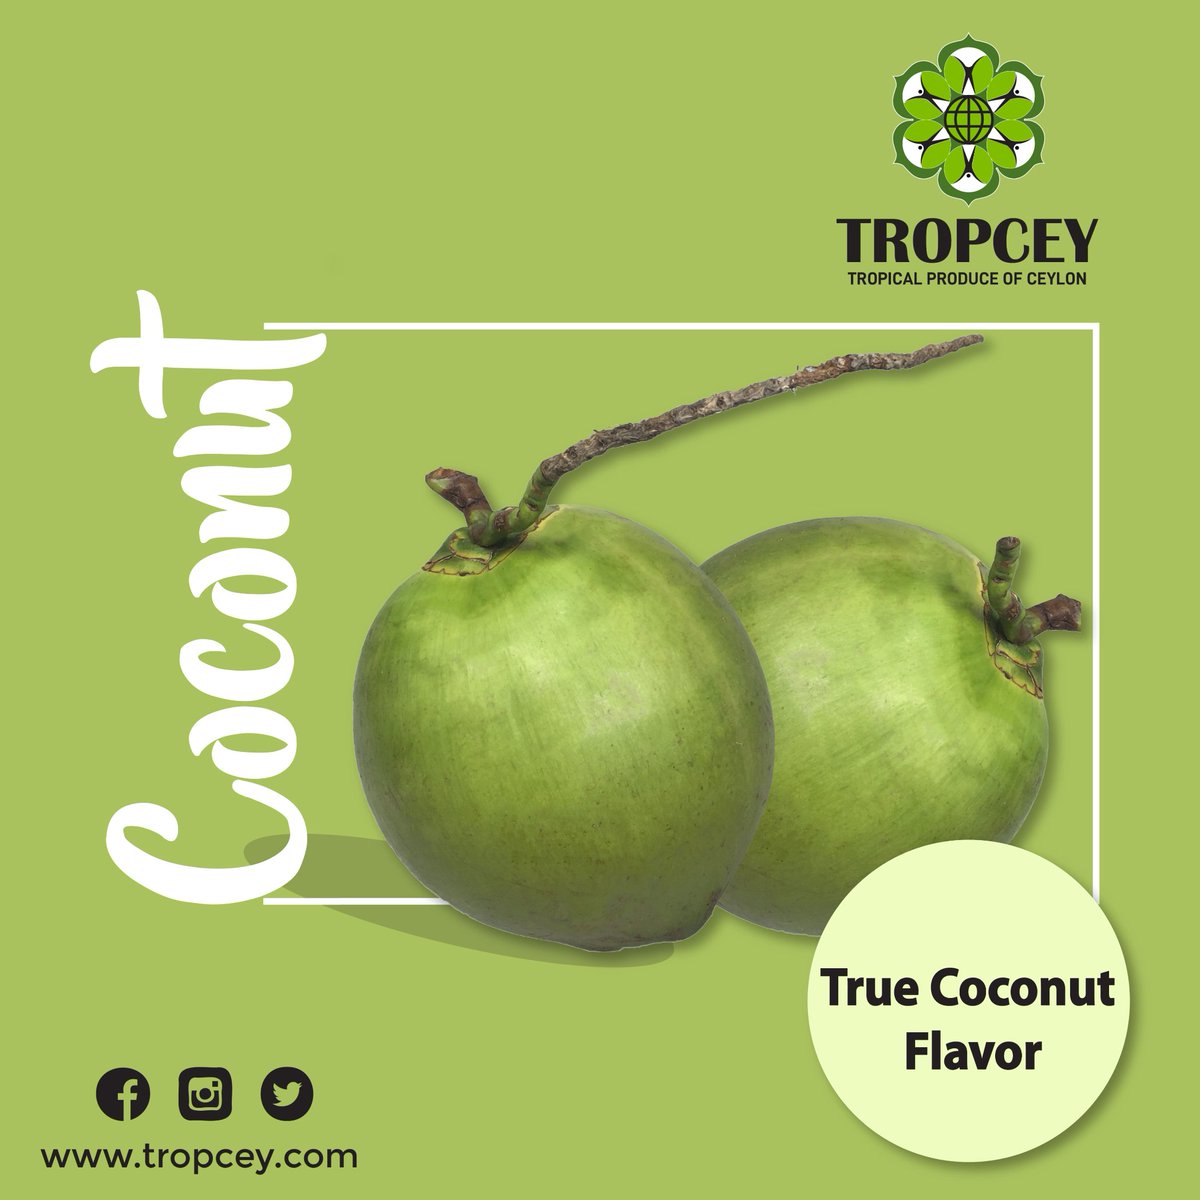 True Coconut Flavor...🧉🌴
#coconutflavor #tropceyexport #madeinsrilanka #coconutoil #coconutwater #coconutmilk #coconutchips #coconut #coconutproducts #coconutindustry #tropical